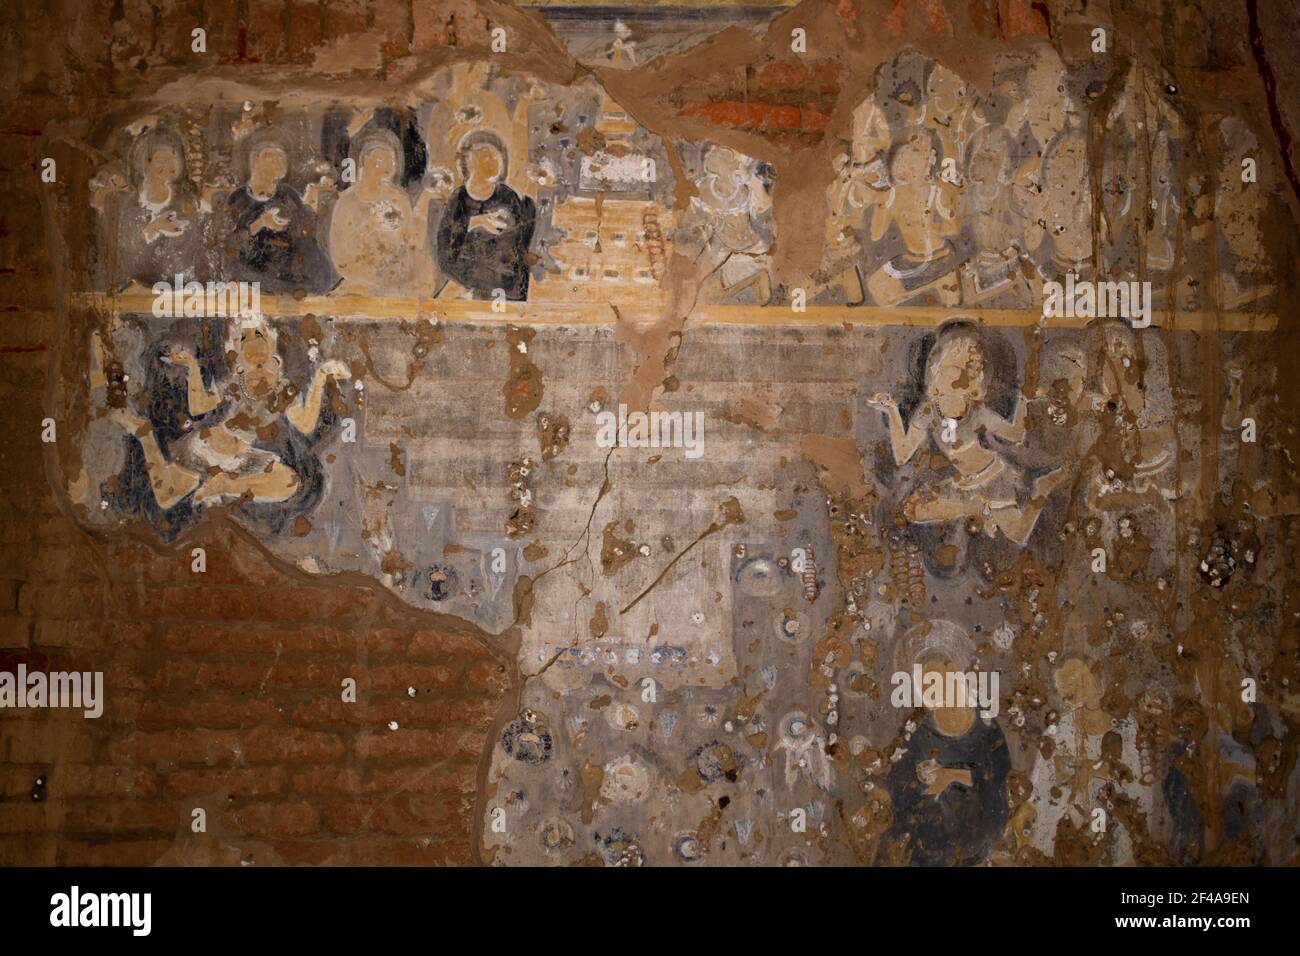 BAGAN, NYAUNG-U, MYANMAR - 2. JANUAR 2020: Historische Wandmalereien und Zeichnungen in einem Pagodentempel in Pagan Stockfoto